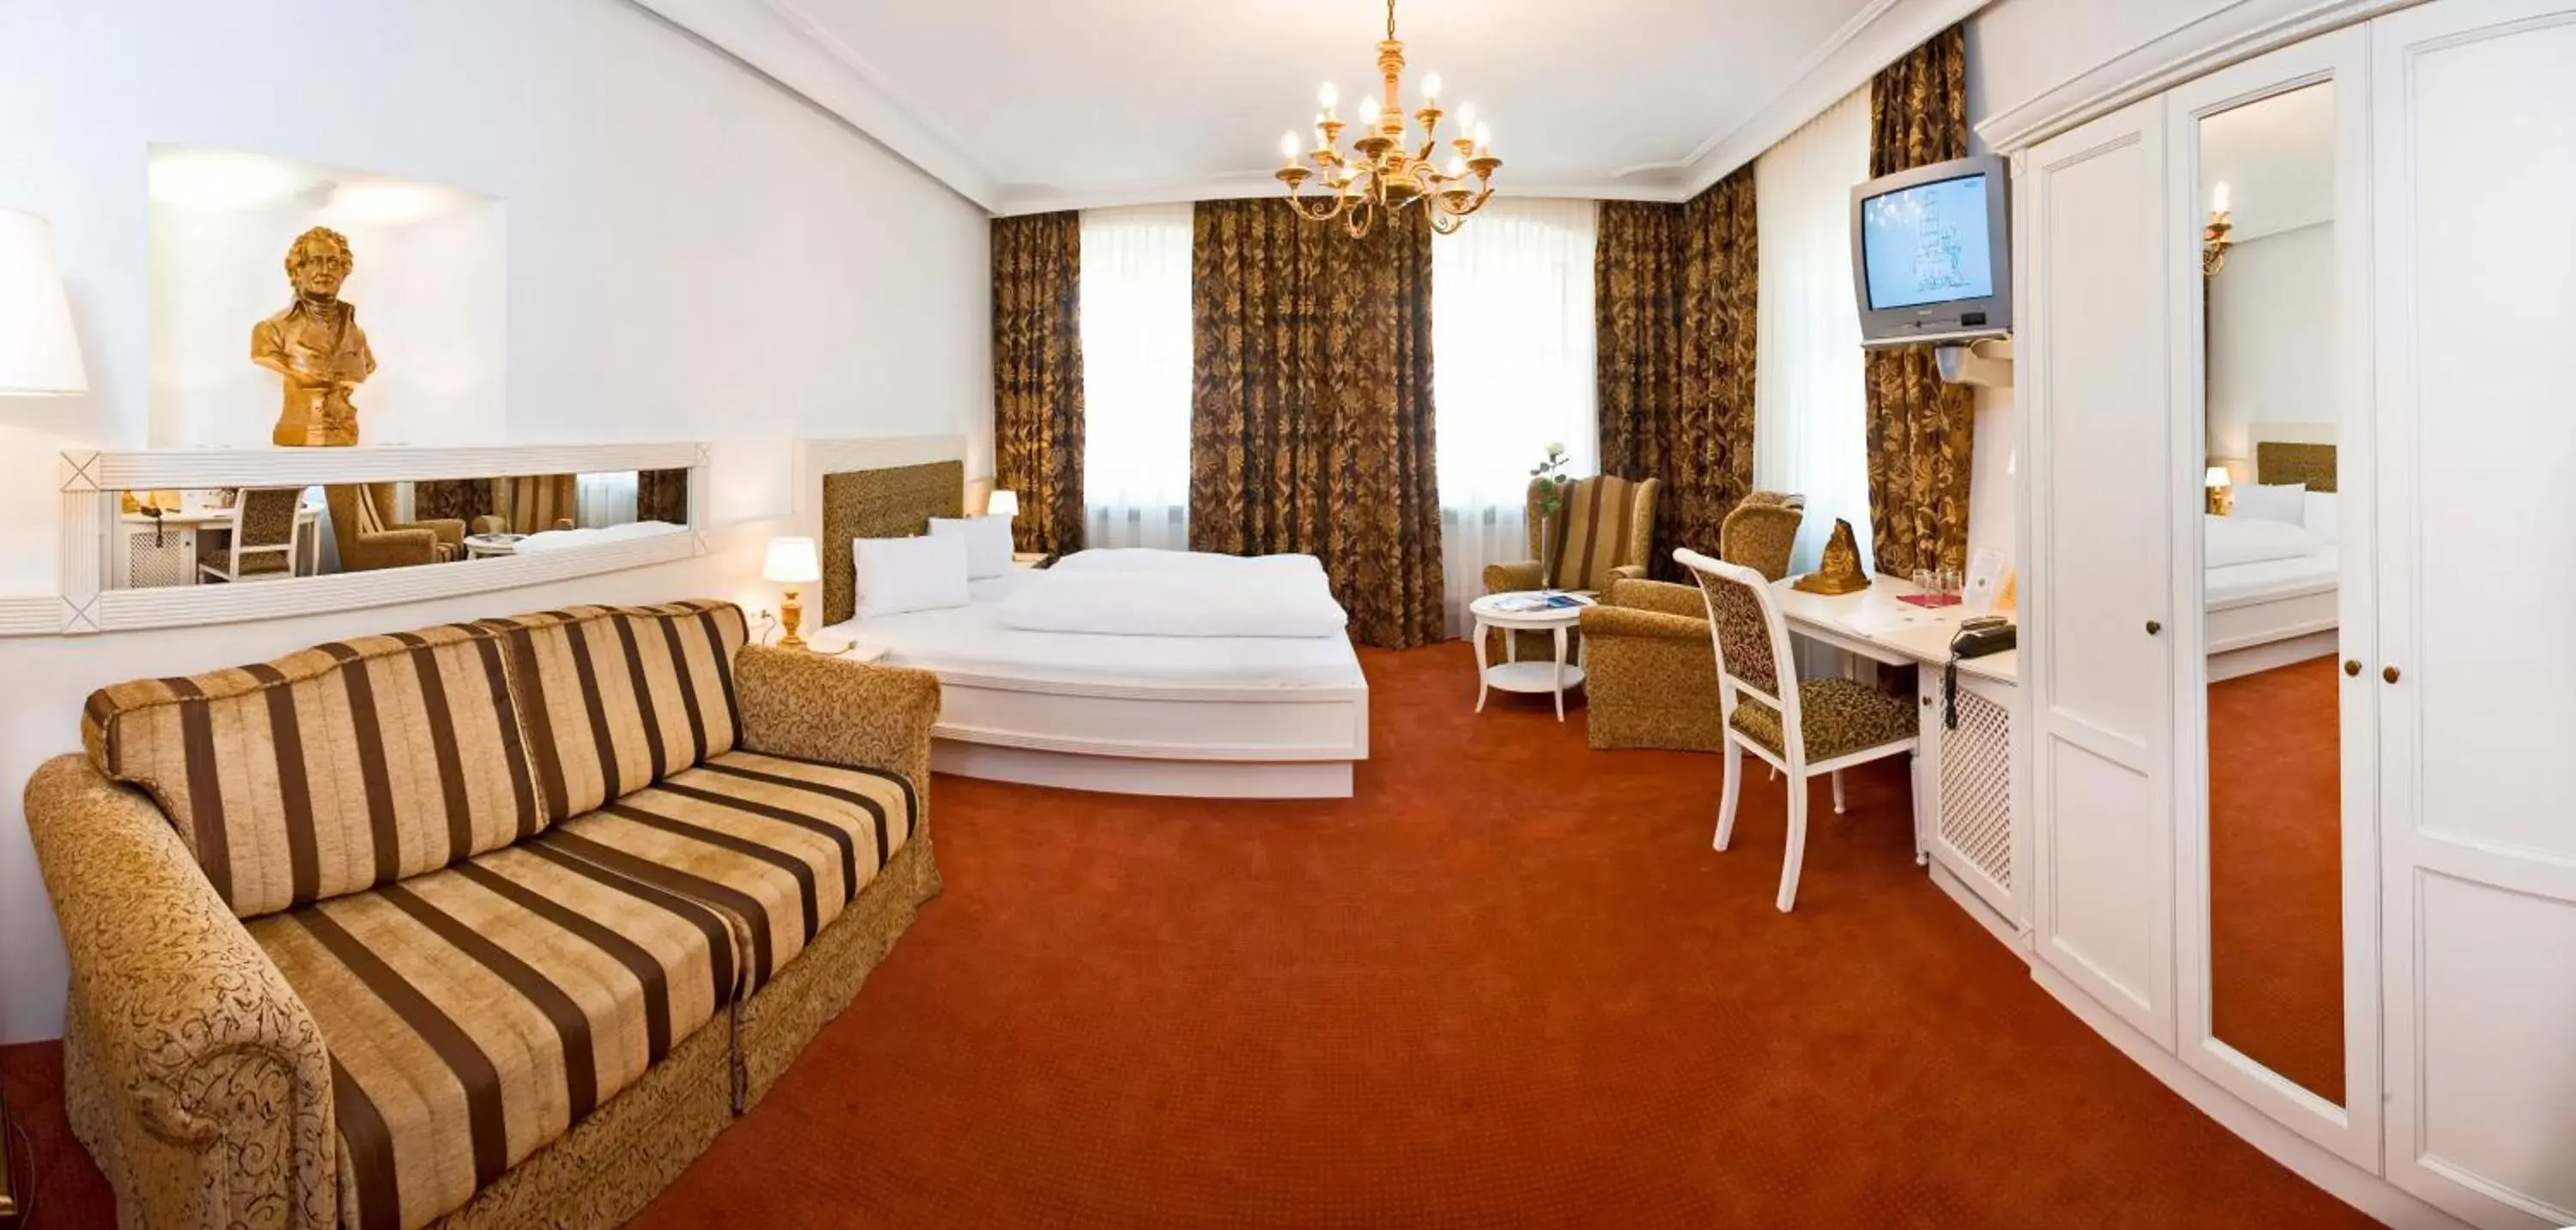 Photo of the whole room in BEST WESTERN Plus Hotel Goldener Adler Innsbruck